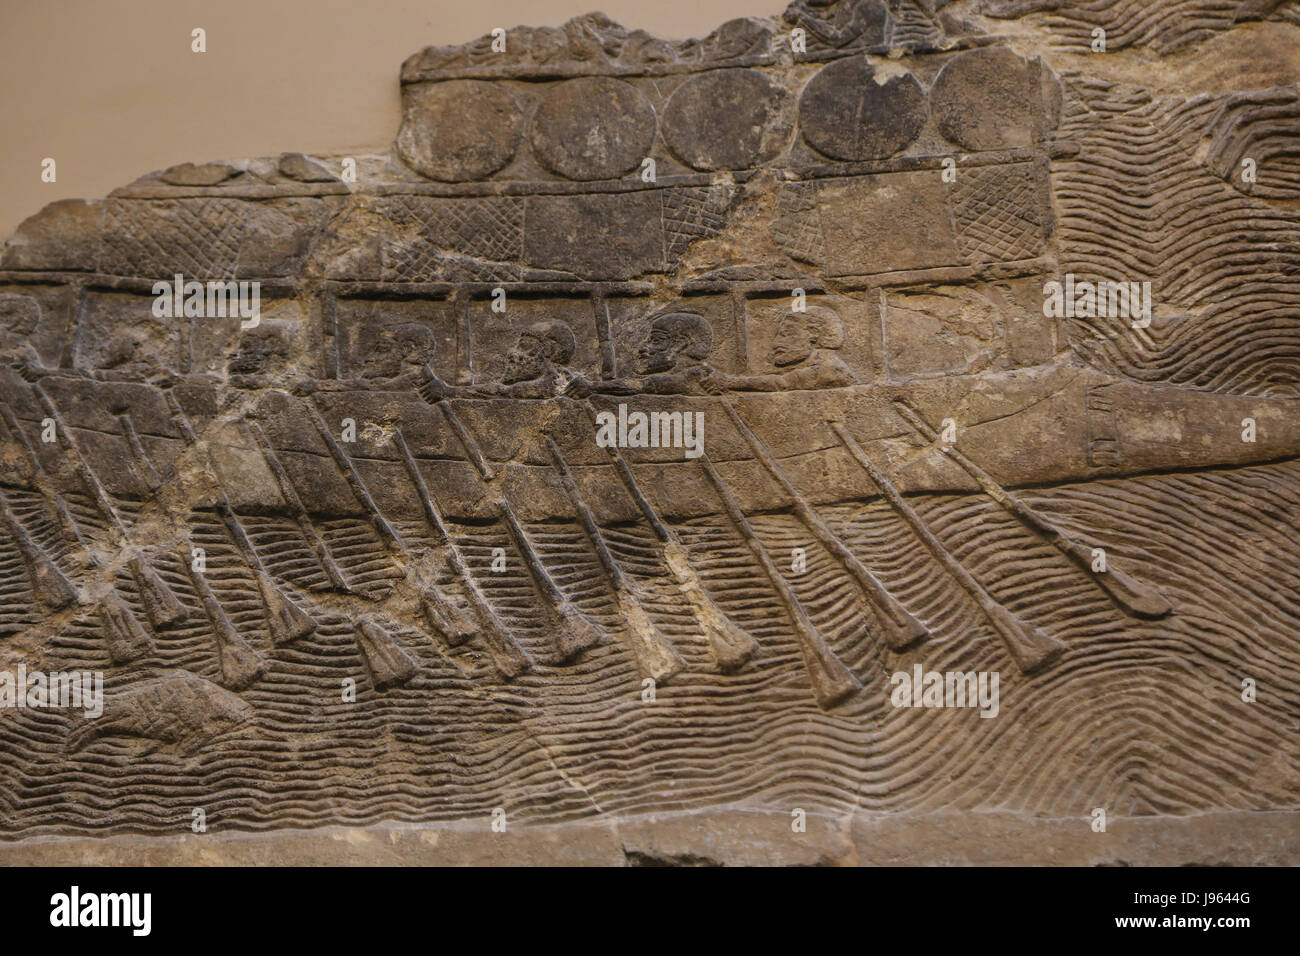 Kriegsschiff. Gebaut und besetzt von den Phöniziern Sennacherib angestellt. Assyrische, 700-692 v. Chr.. Ninive, Südwest-Palast. Irak. British Museum. London. Stockfoto